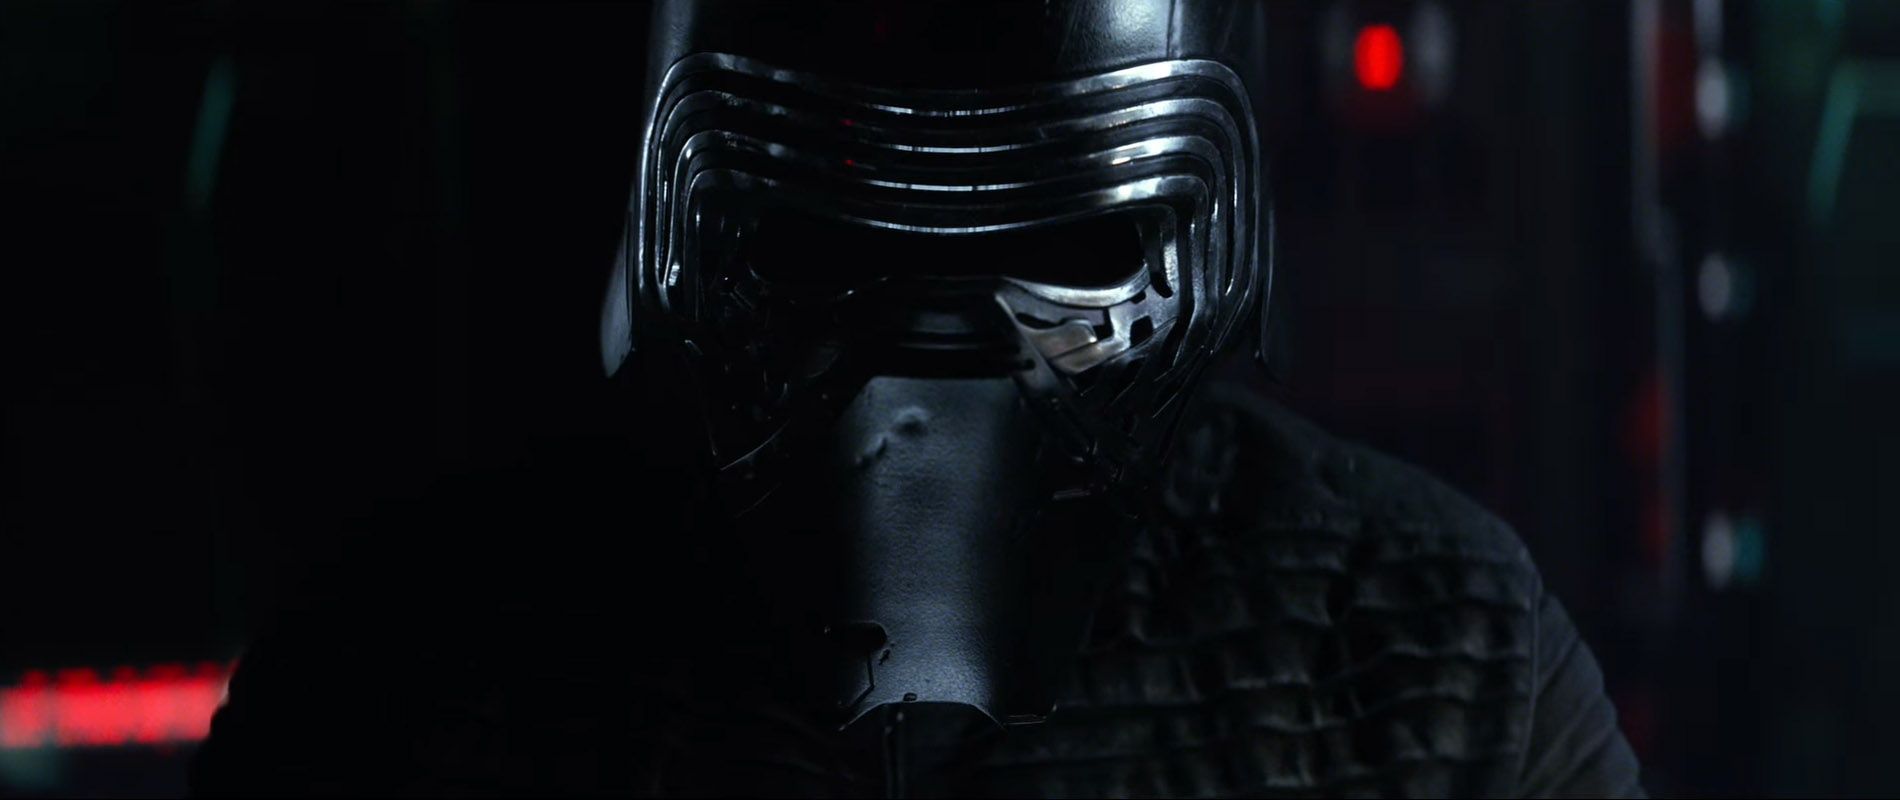 Star Wars 7 Trailer #3 - Kylo Ren's Helmet